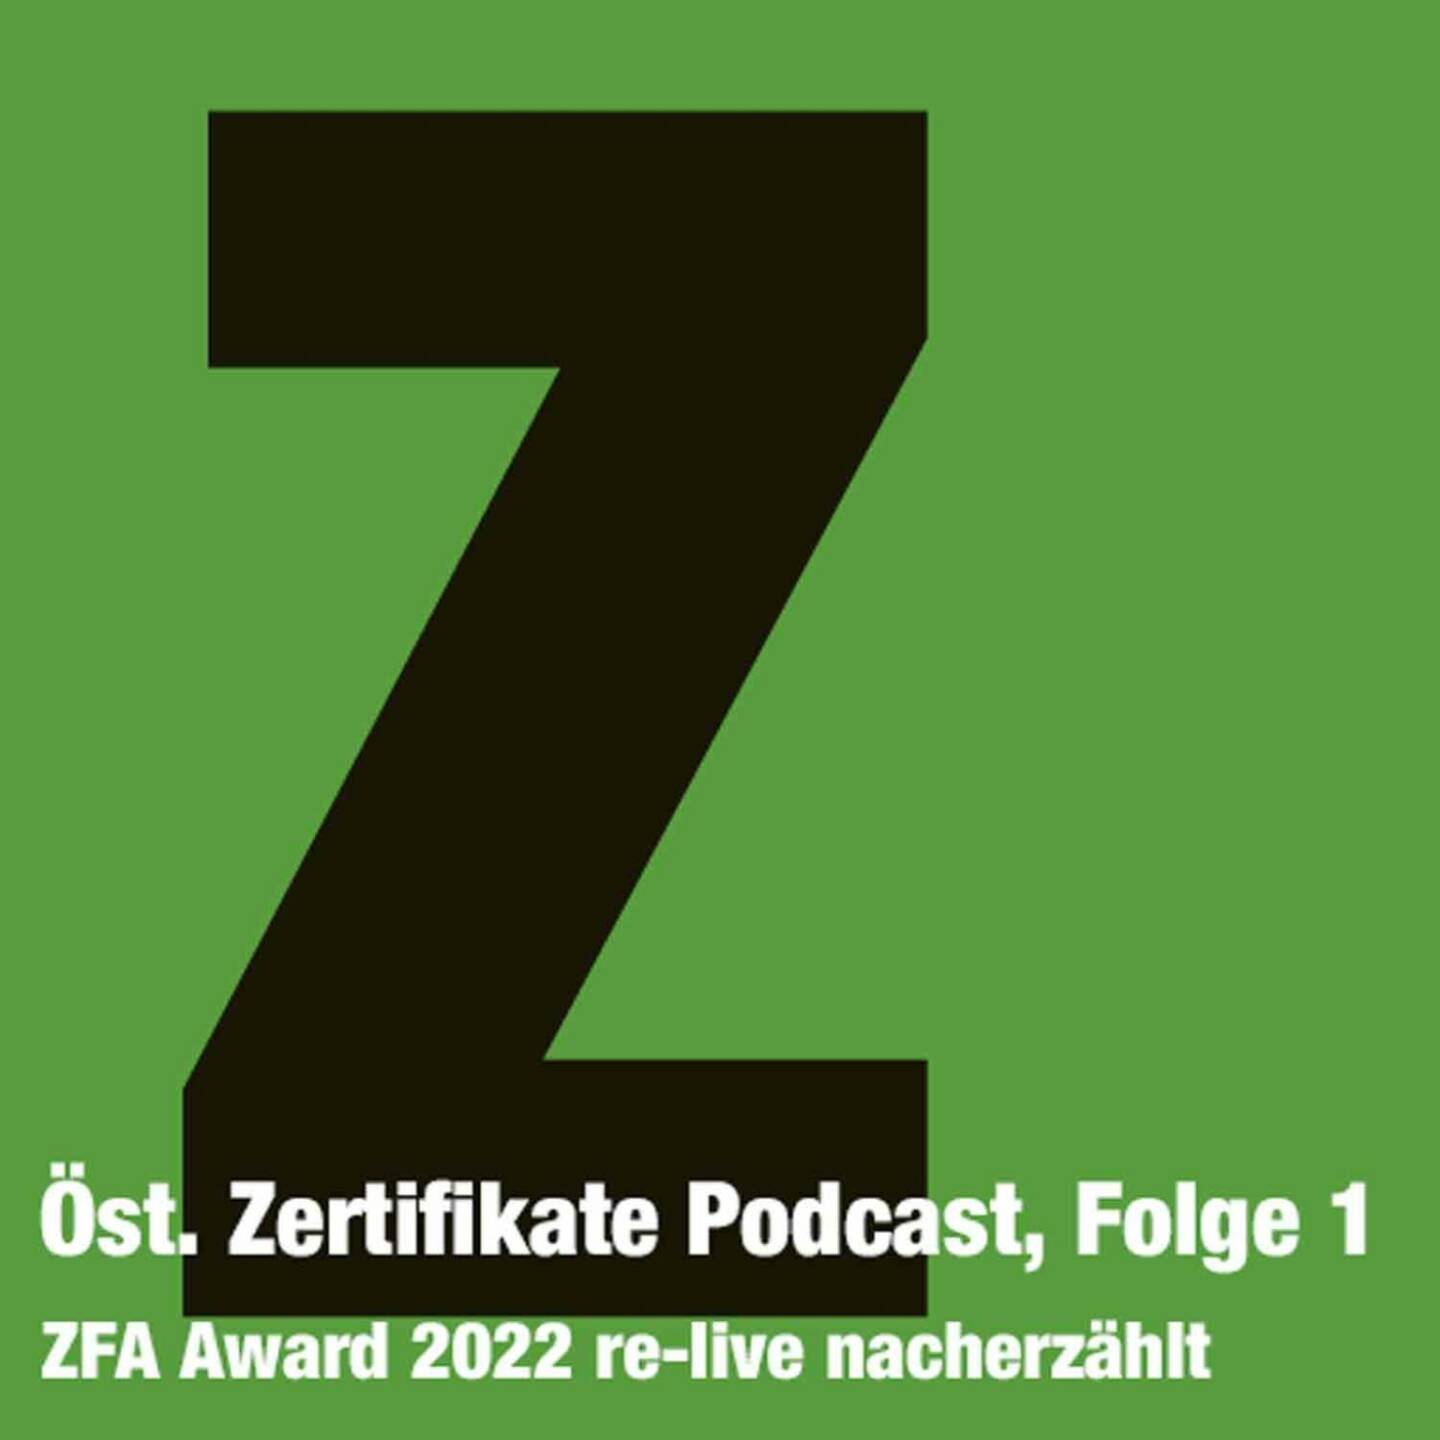 Zertifikate Podcast Österreich, Folge 1: Der ZFA-Award 2022 re-live nacherzählt. https://boersenradio.at/page/podcast/3444